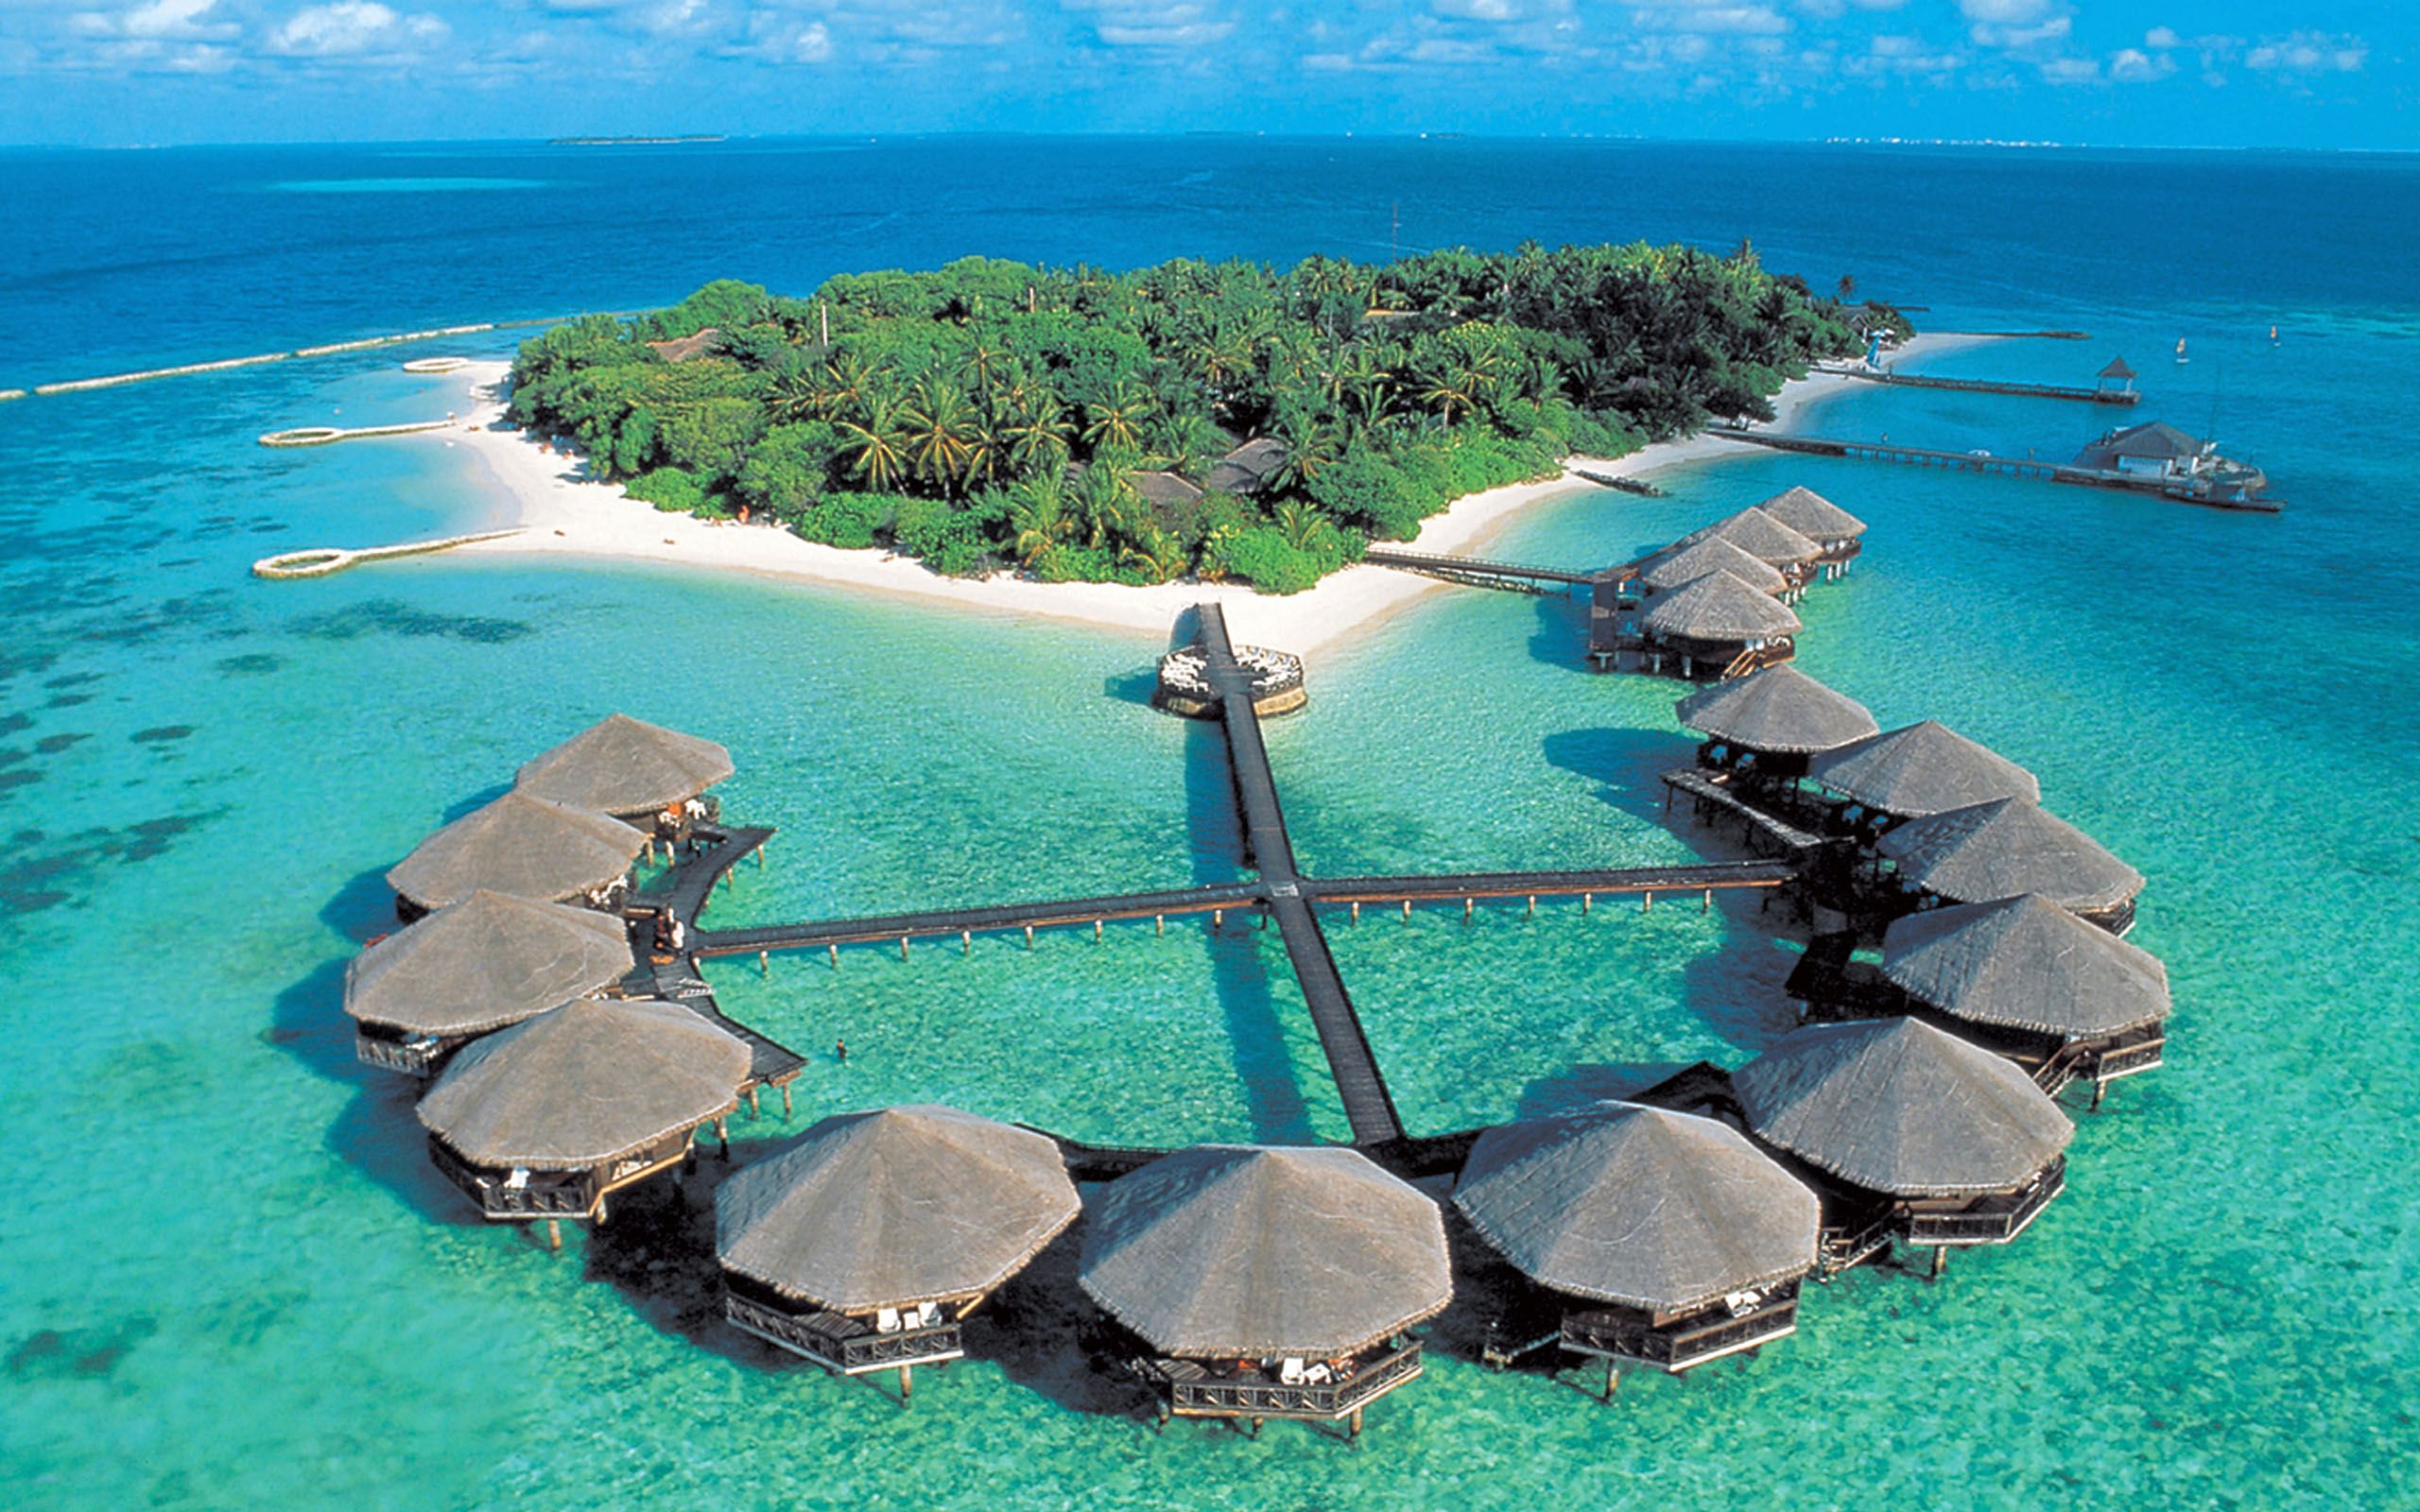 The island was beautiful. Атолл Тувалу. Лааму Атолл Мальдивы. Остров Хитаду Мальдивы. Мале Мальдивские острова.